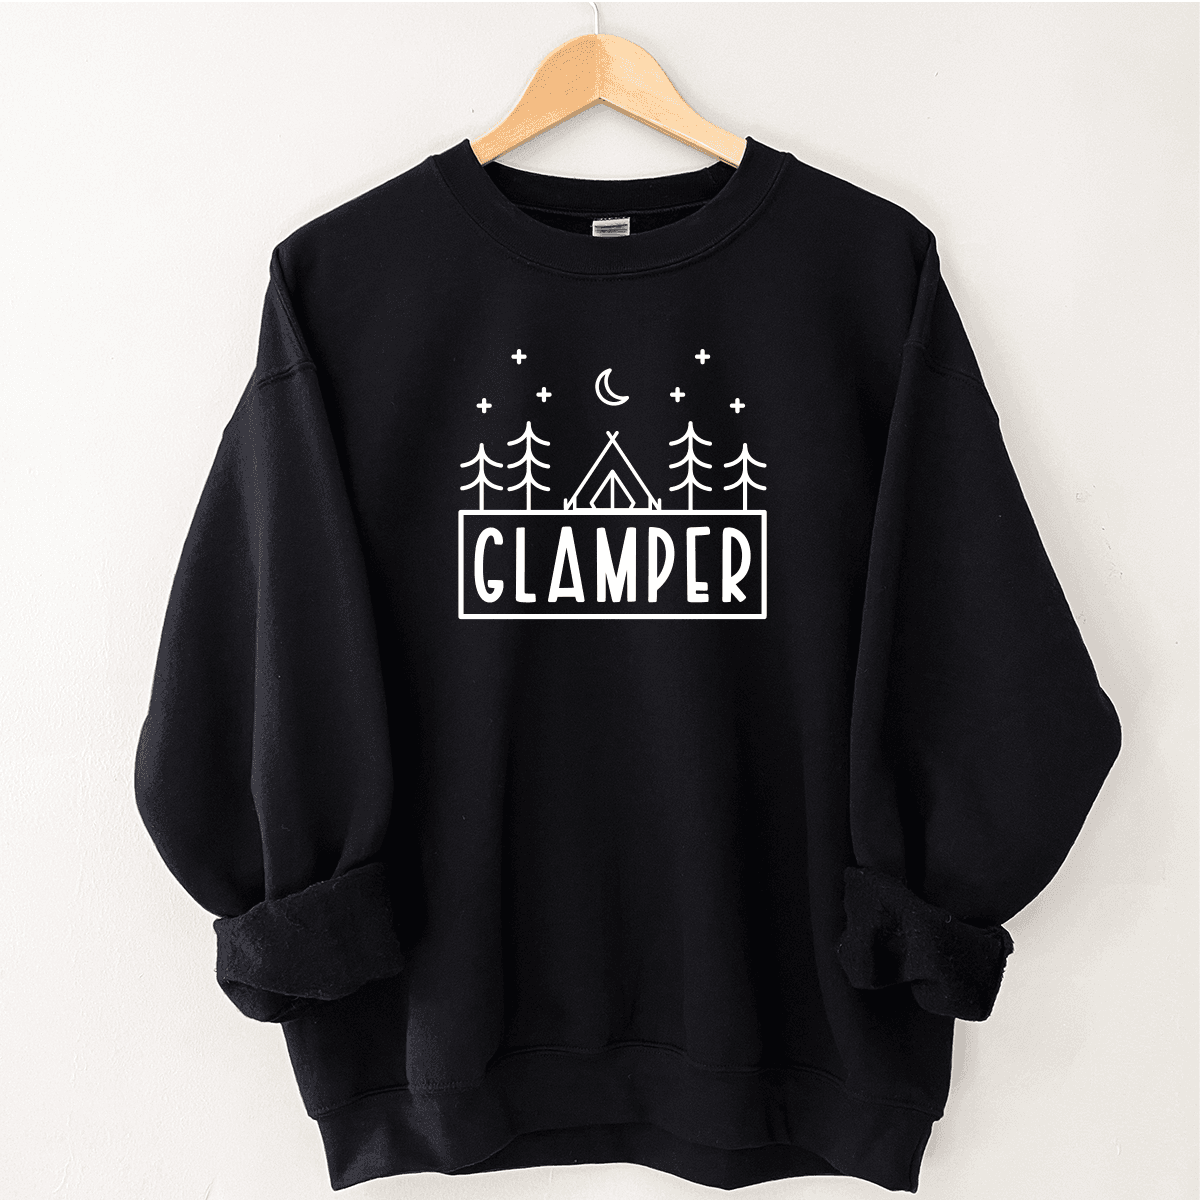 Glamper - Sweatshirt